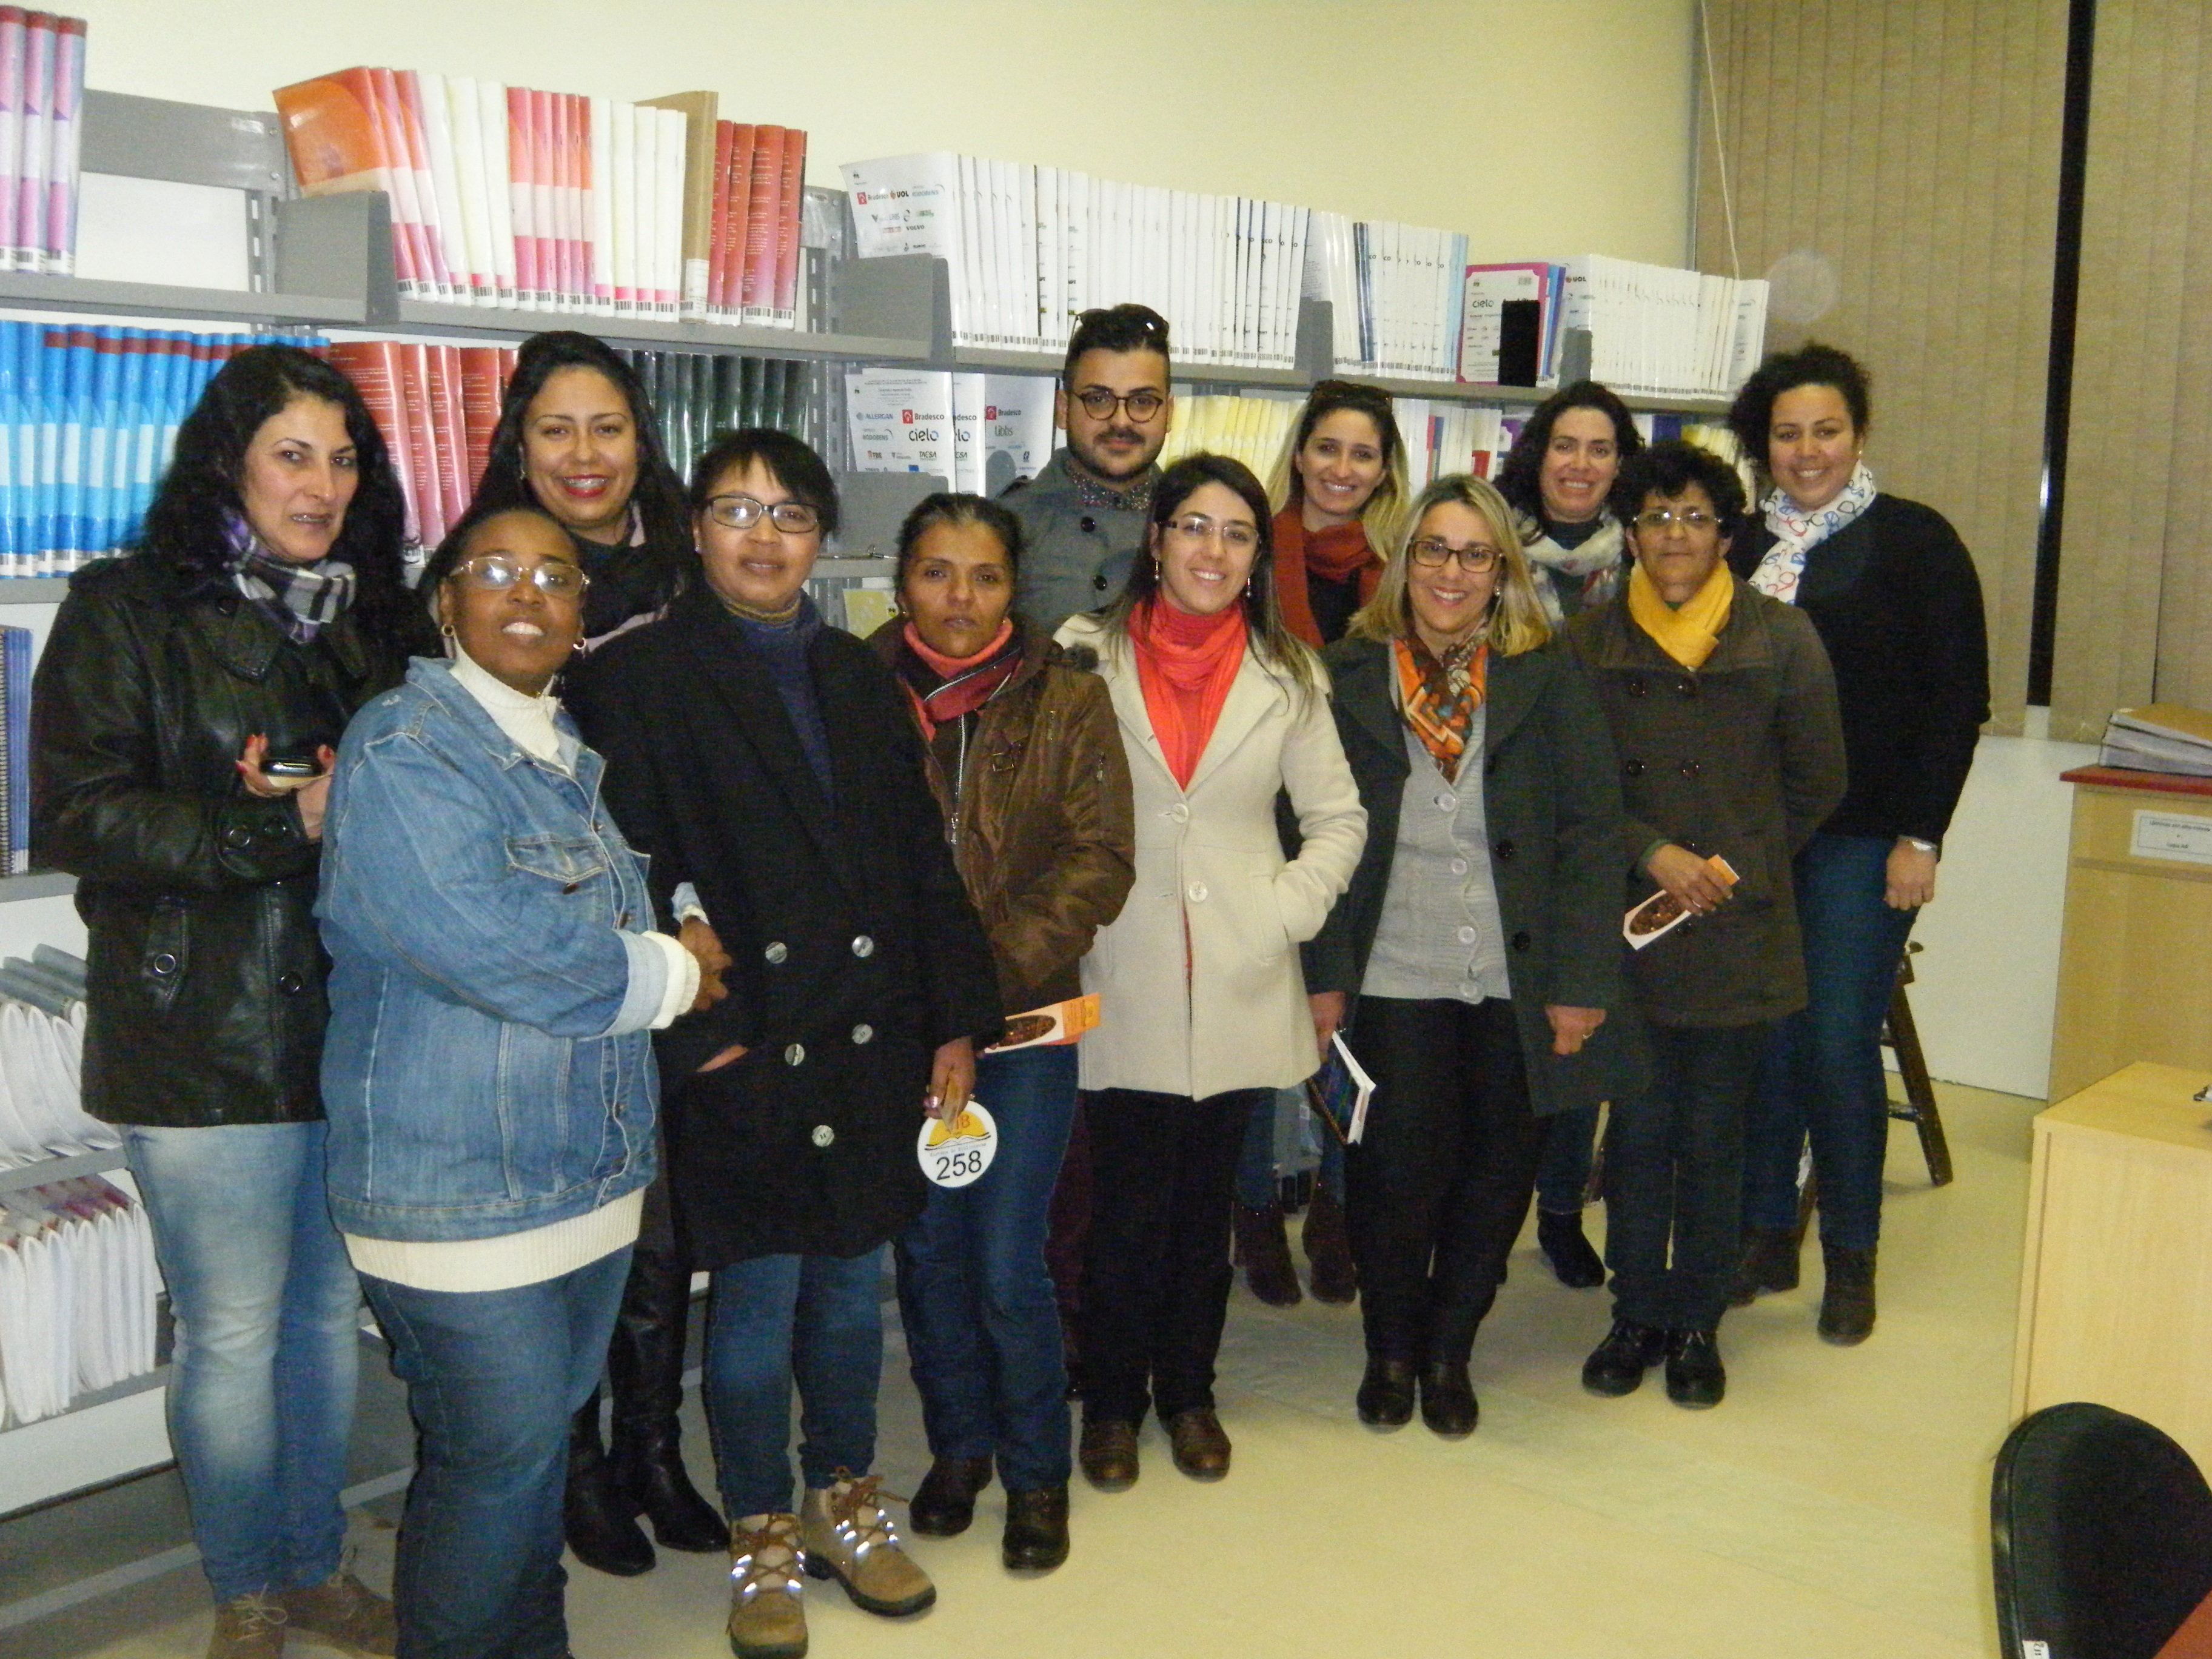 foto dos alunos e professora que visitaram a biblioteca central do campus carreiros, sendo apresentado pela bibliotecária Maria Helena.